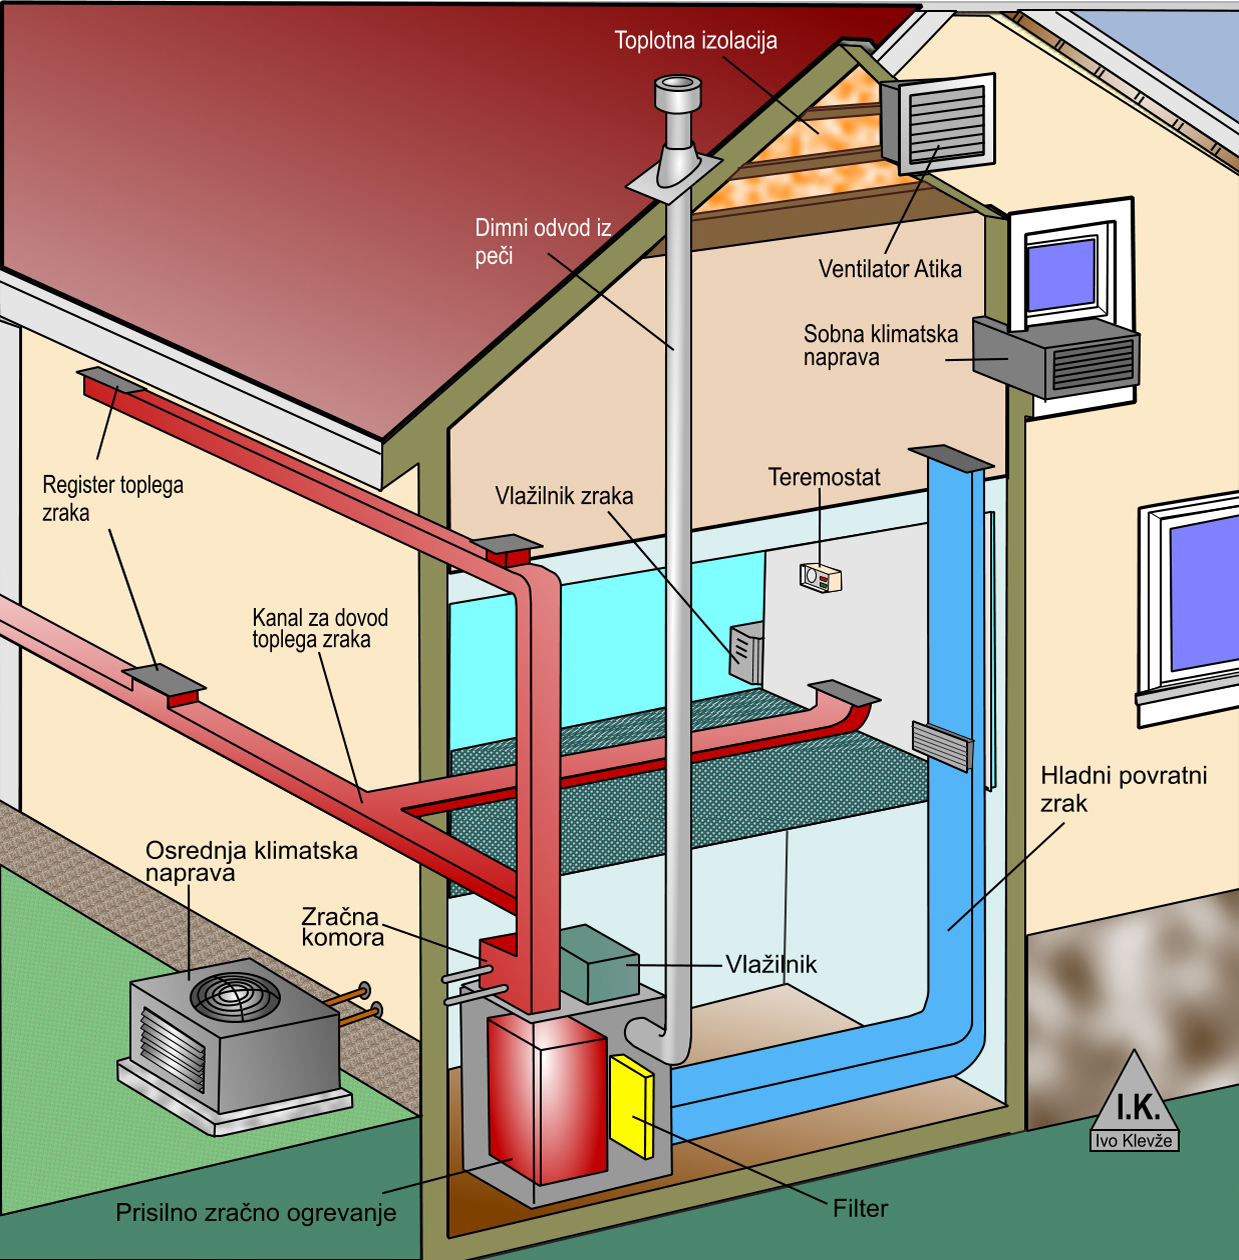 Osrednji hladilni sistem distribuira klimatiziran zrak skozi omrežje kanalov